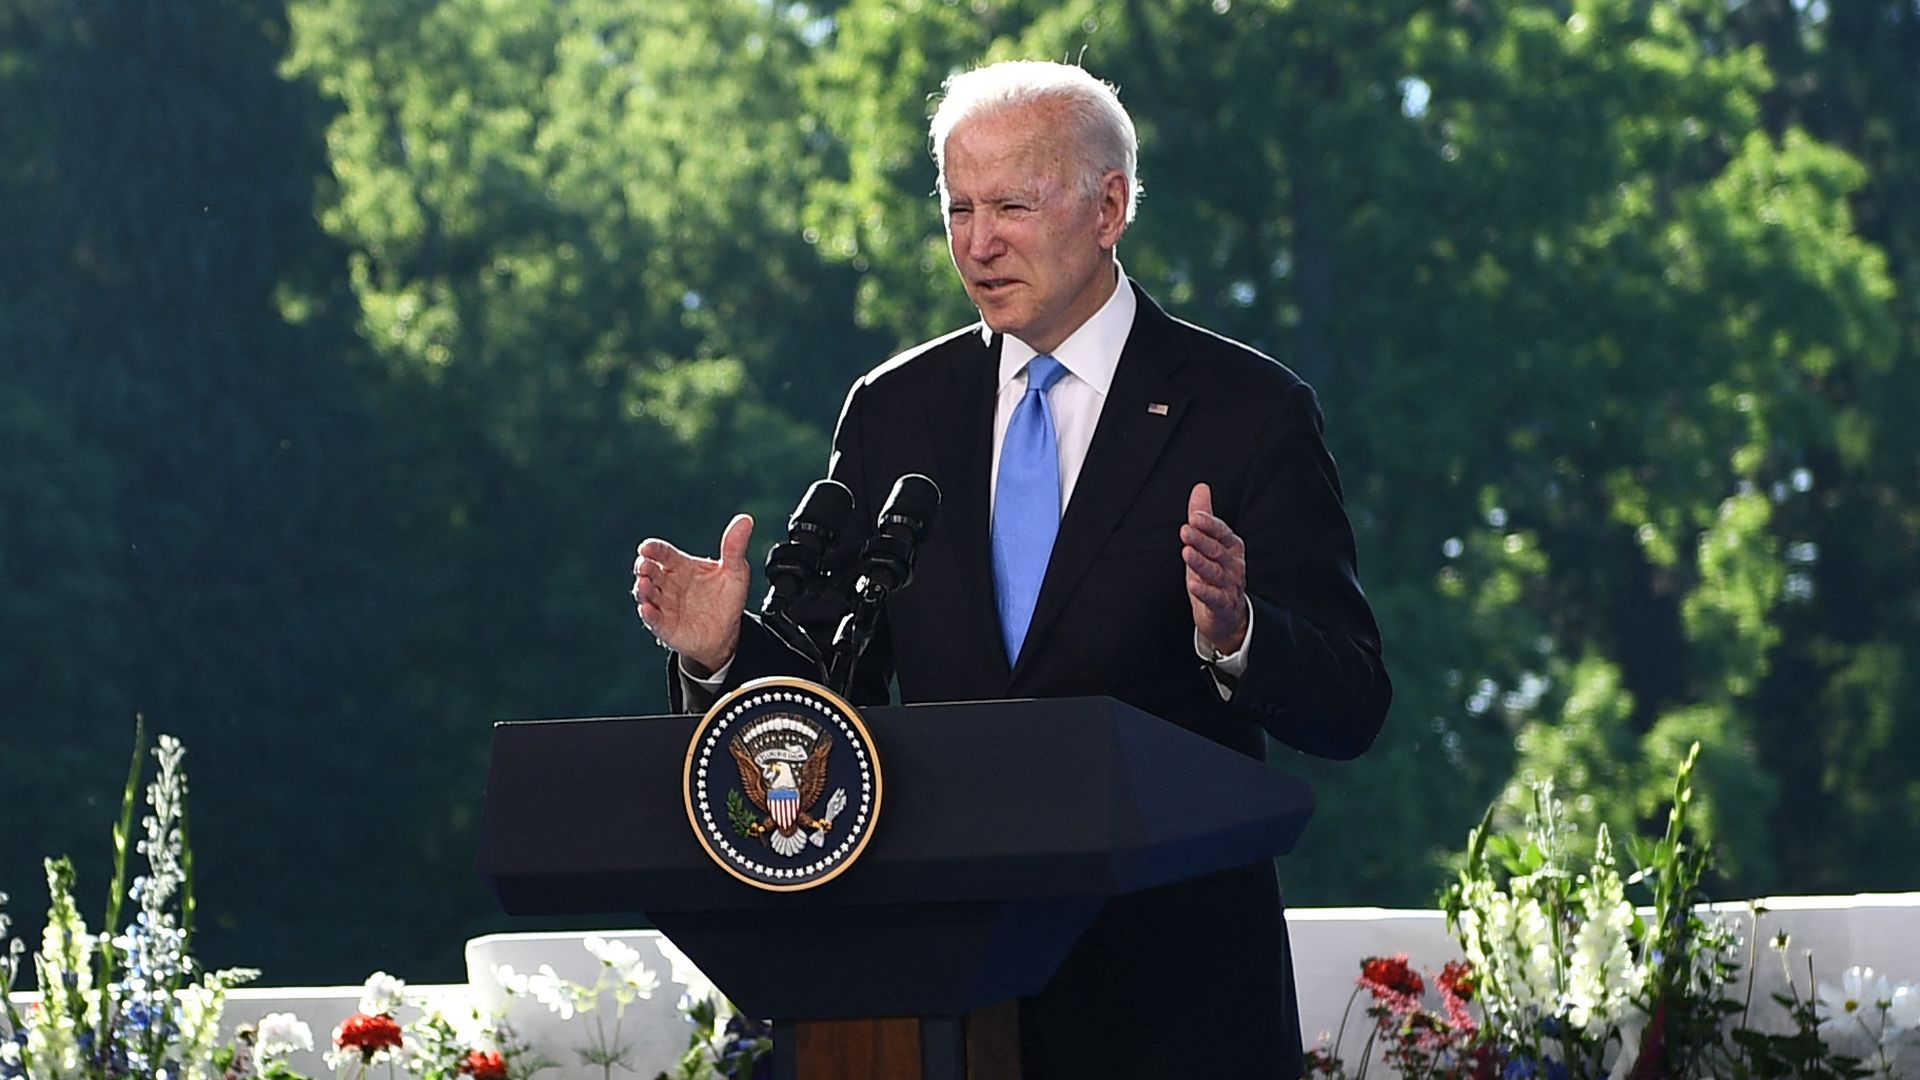 Biden stands behind a podium while speaking